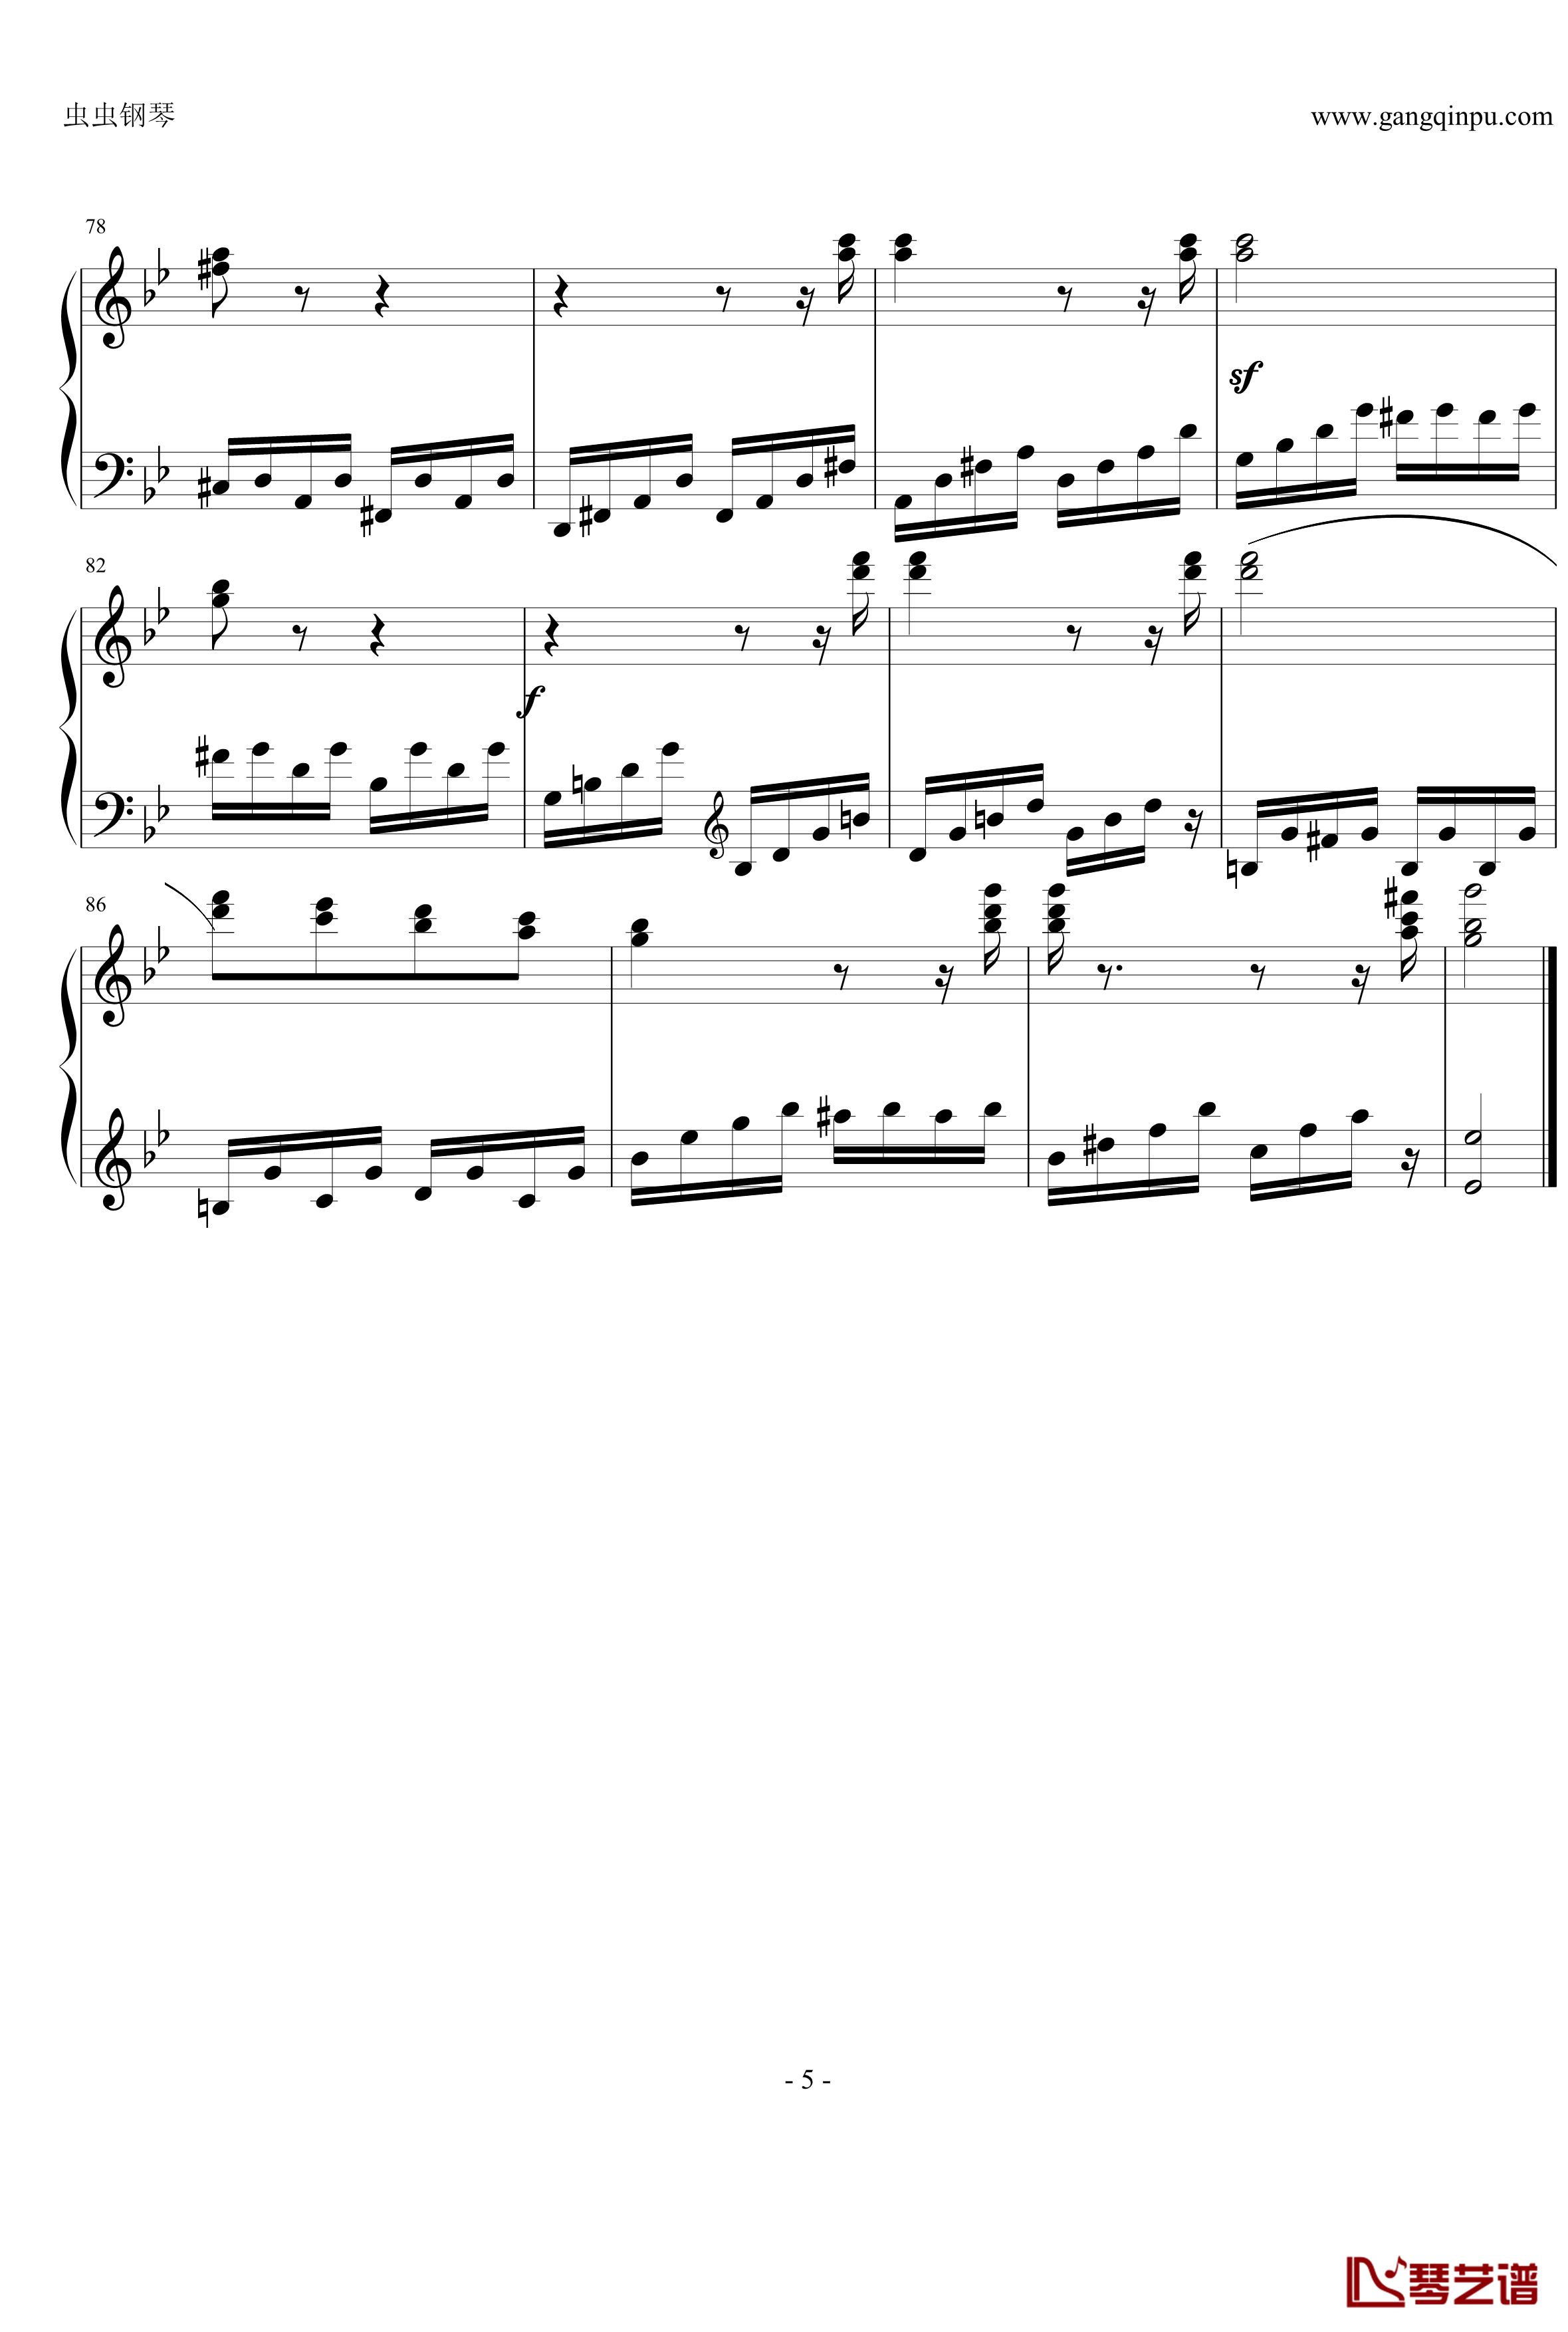 热情奏鸣曲钢琴谱-第三乐章简化改编版-贝多芬-beethoven5